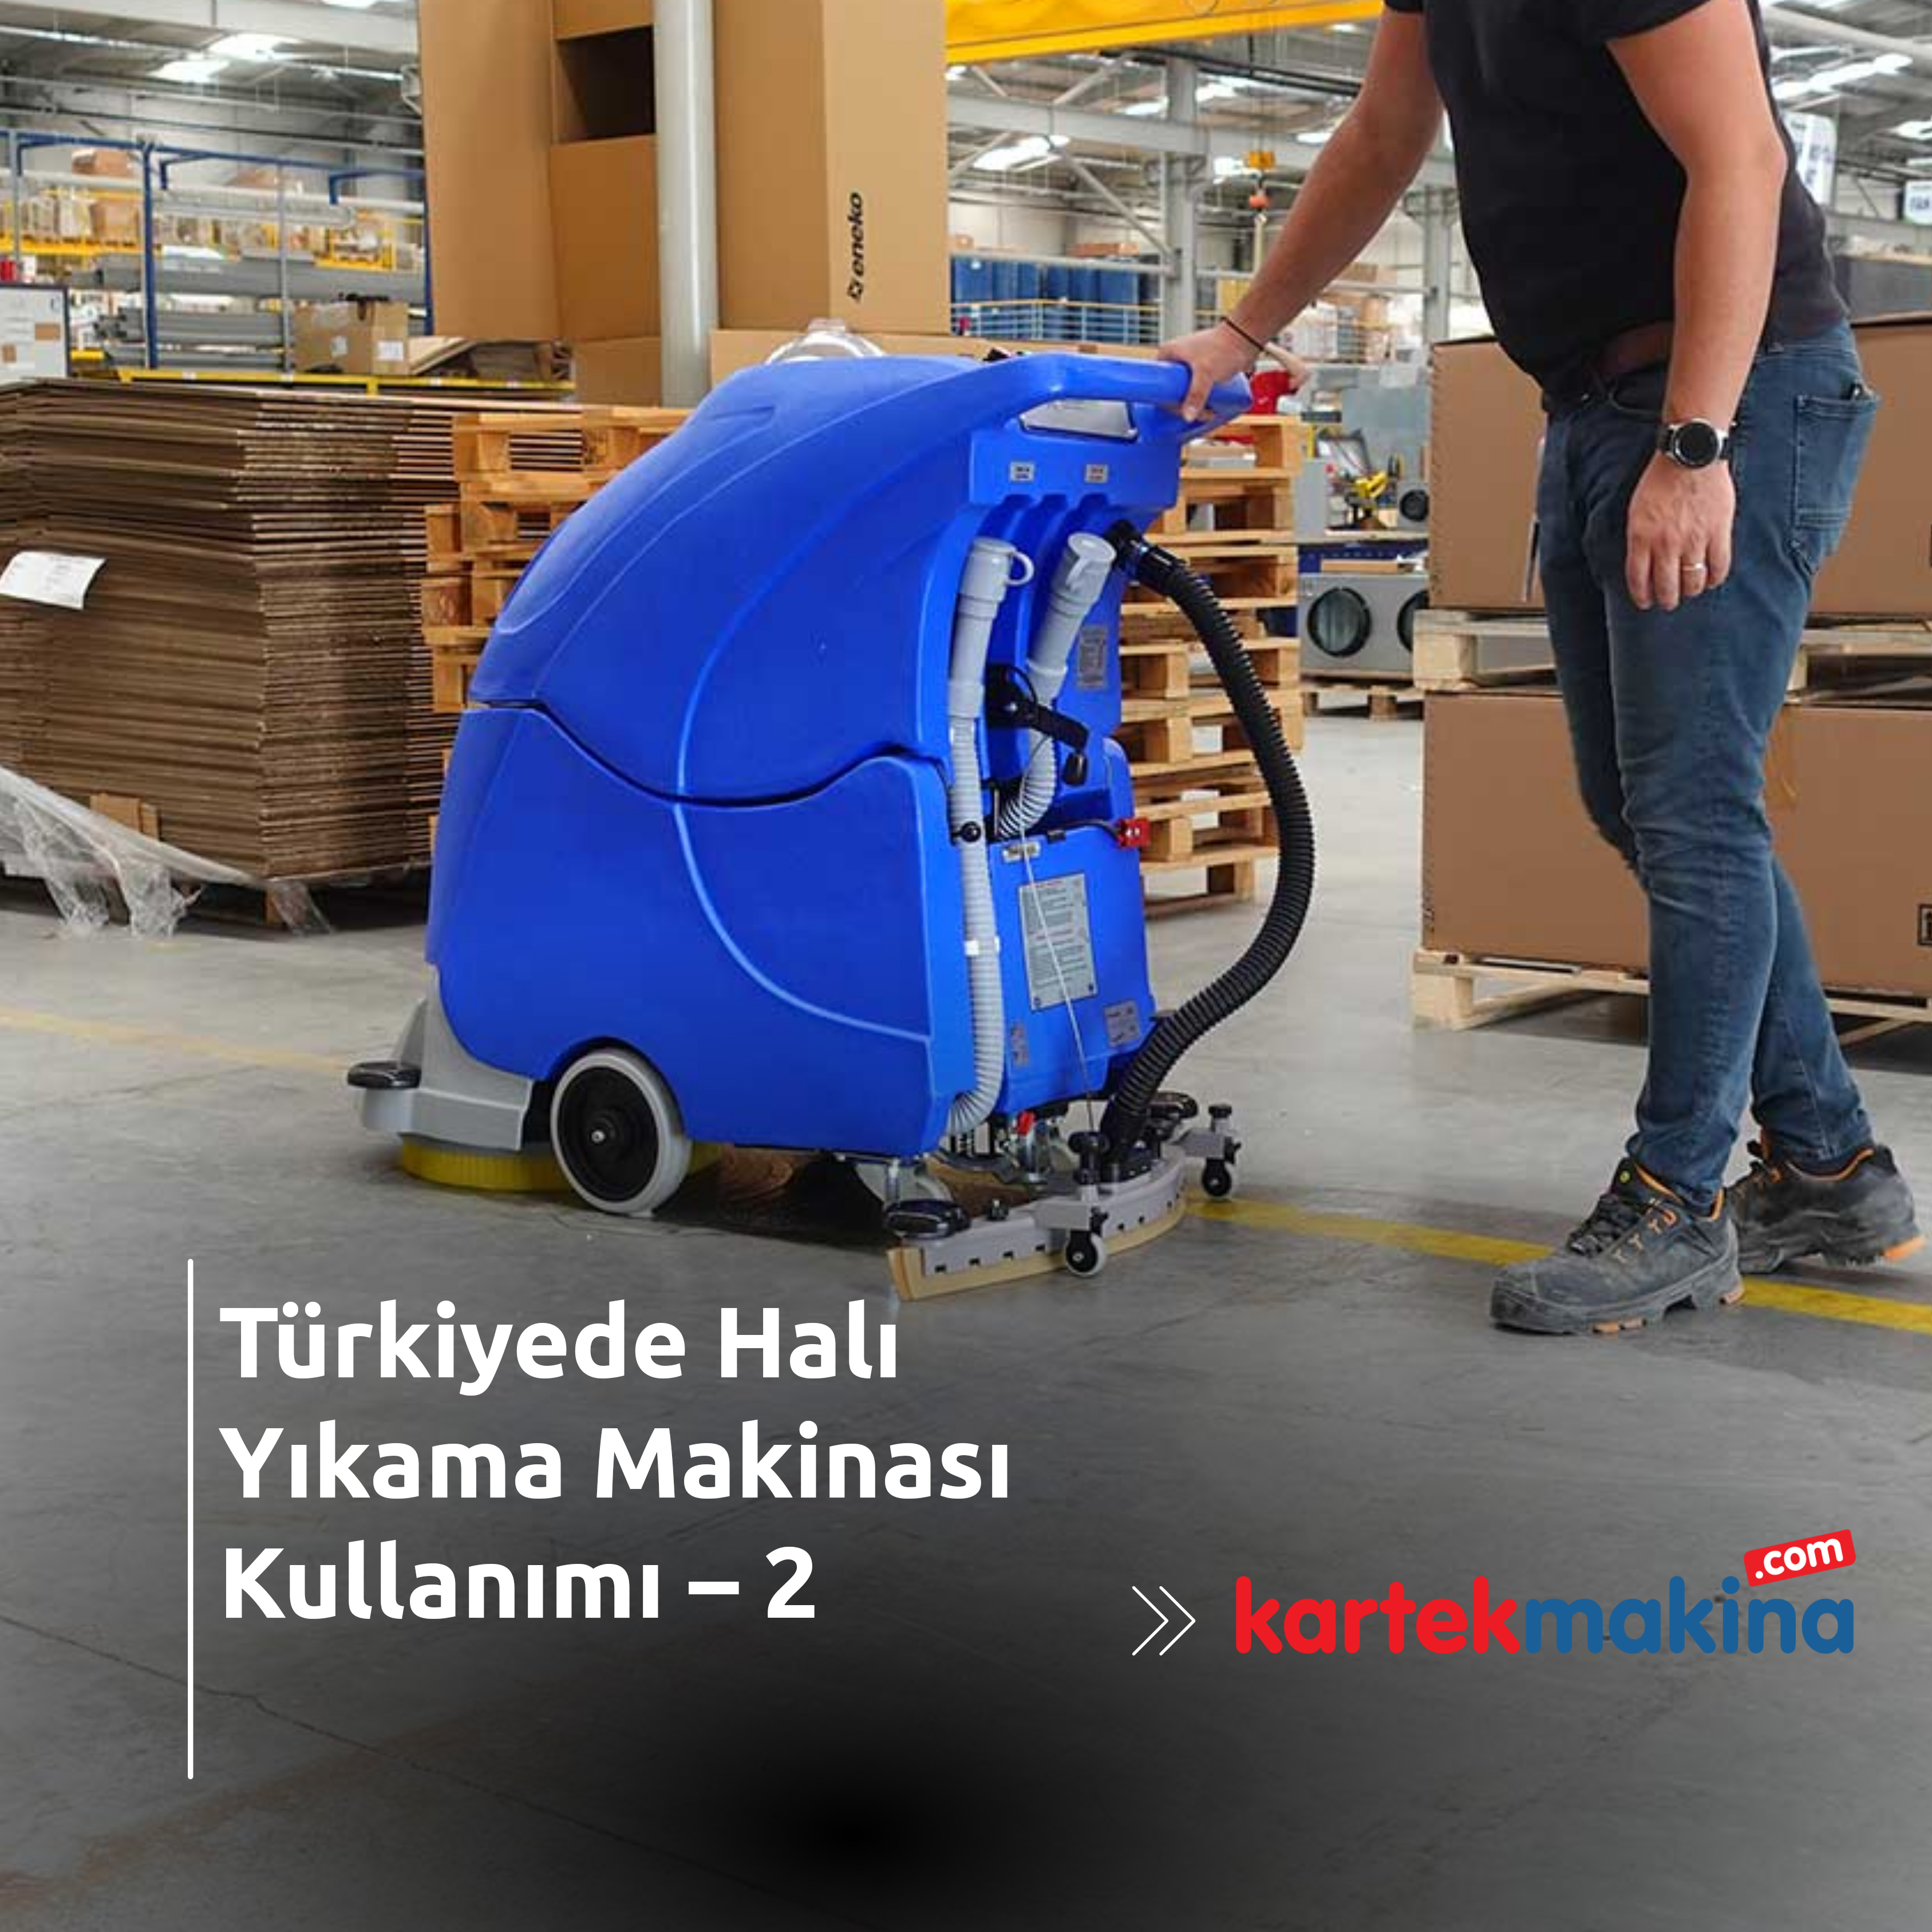 Türkiyede Halı Yıkama Makinası Kullanımı – 2 - Türkiyede Halı Yıkama Makinası Kullanımı – 2